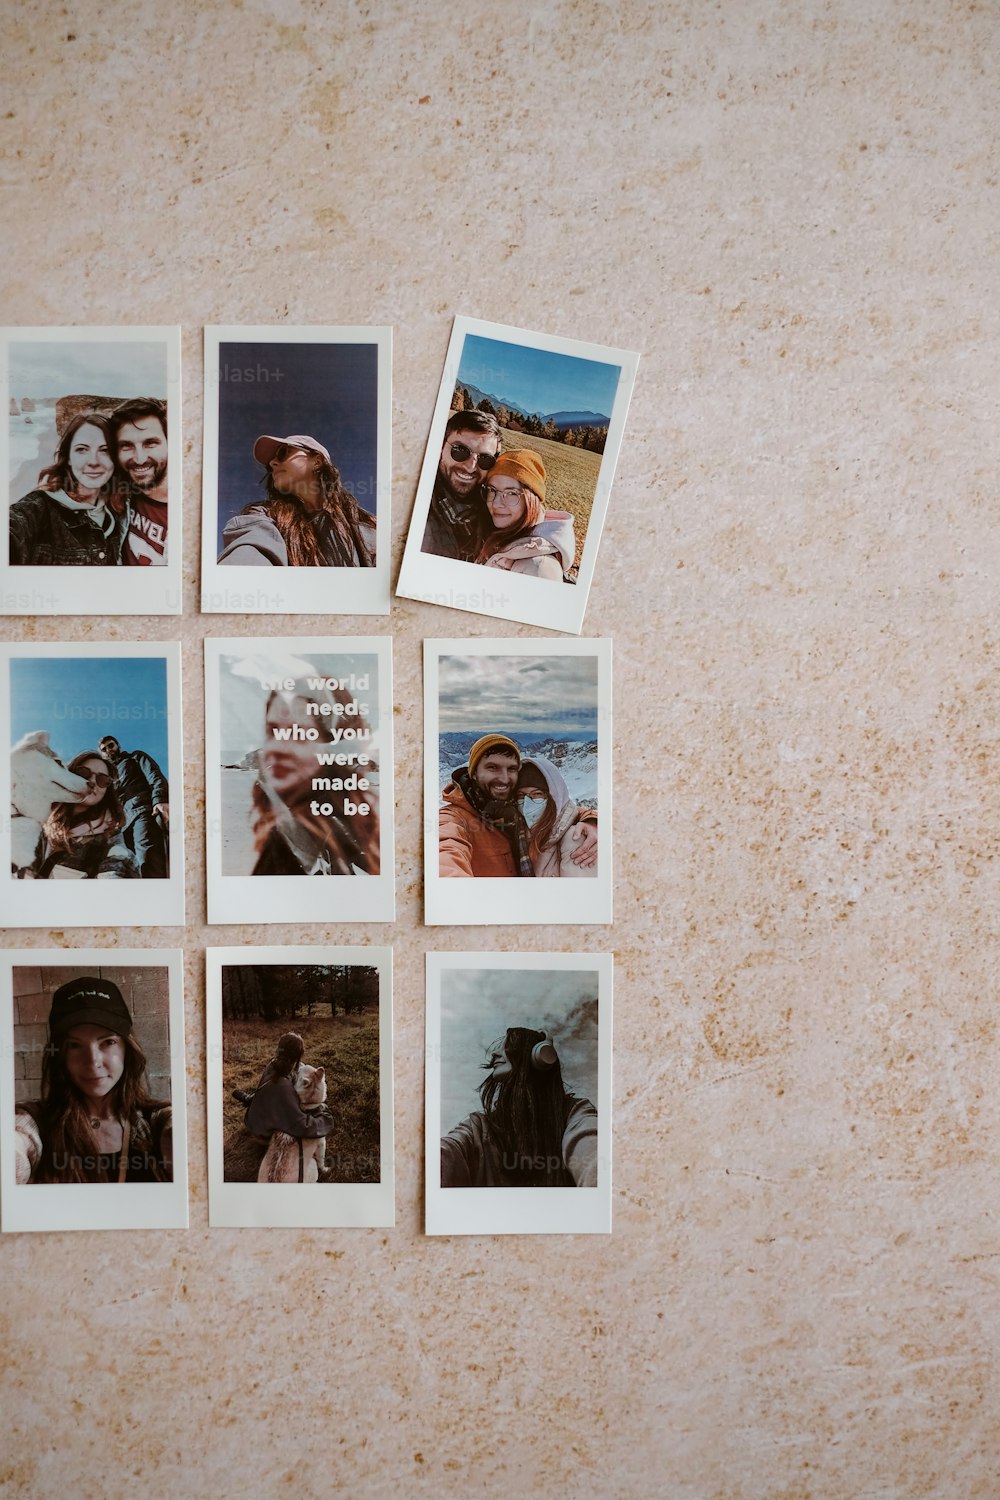 Un grupo de fotos Polaroid de un hombre y una mujer